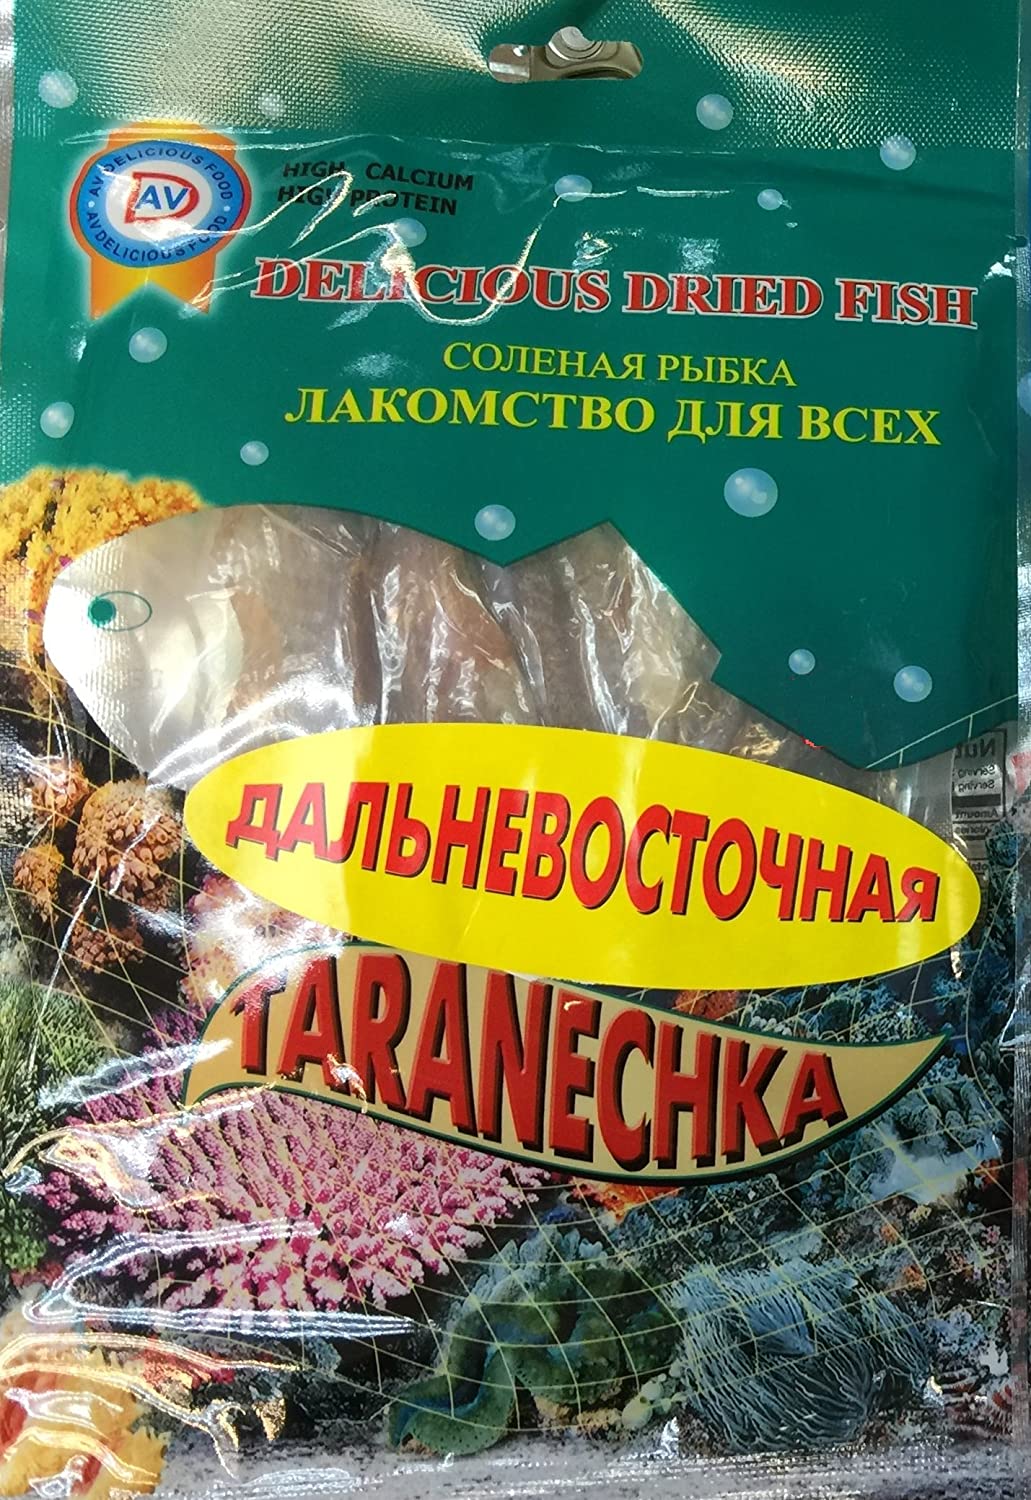 AV DRIED FISH TARANECHKA DALNEVOSTOCHNAYA 90g